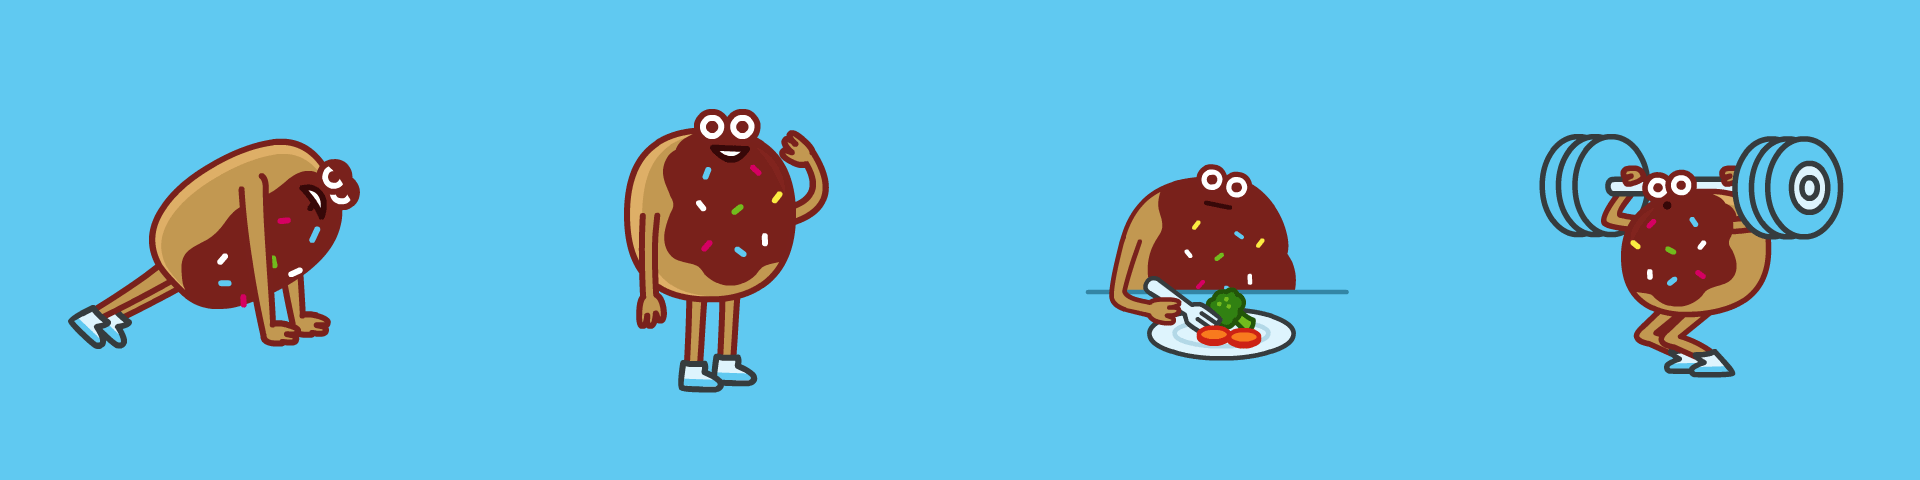 stickerslider_doughnut2